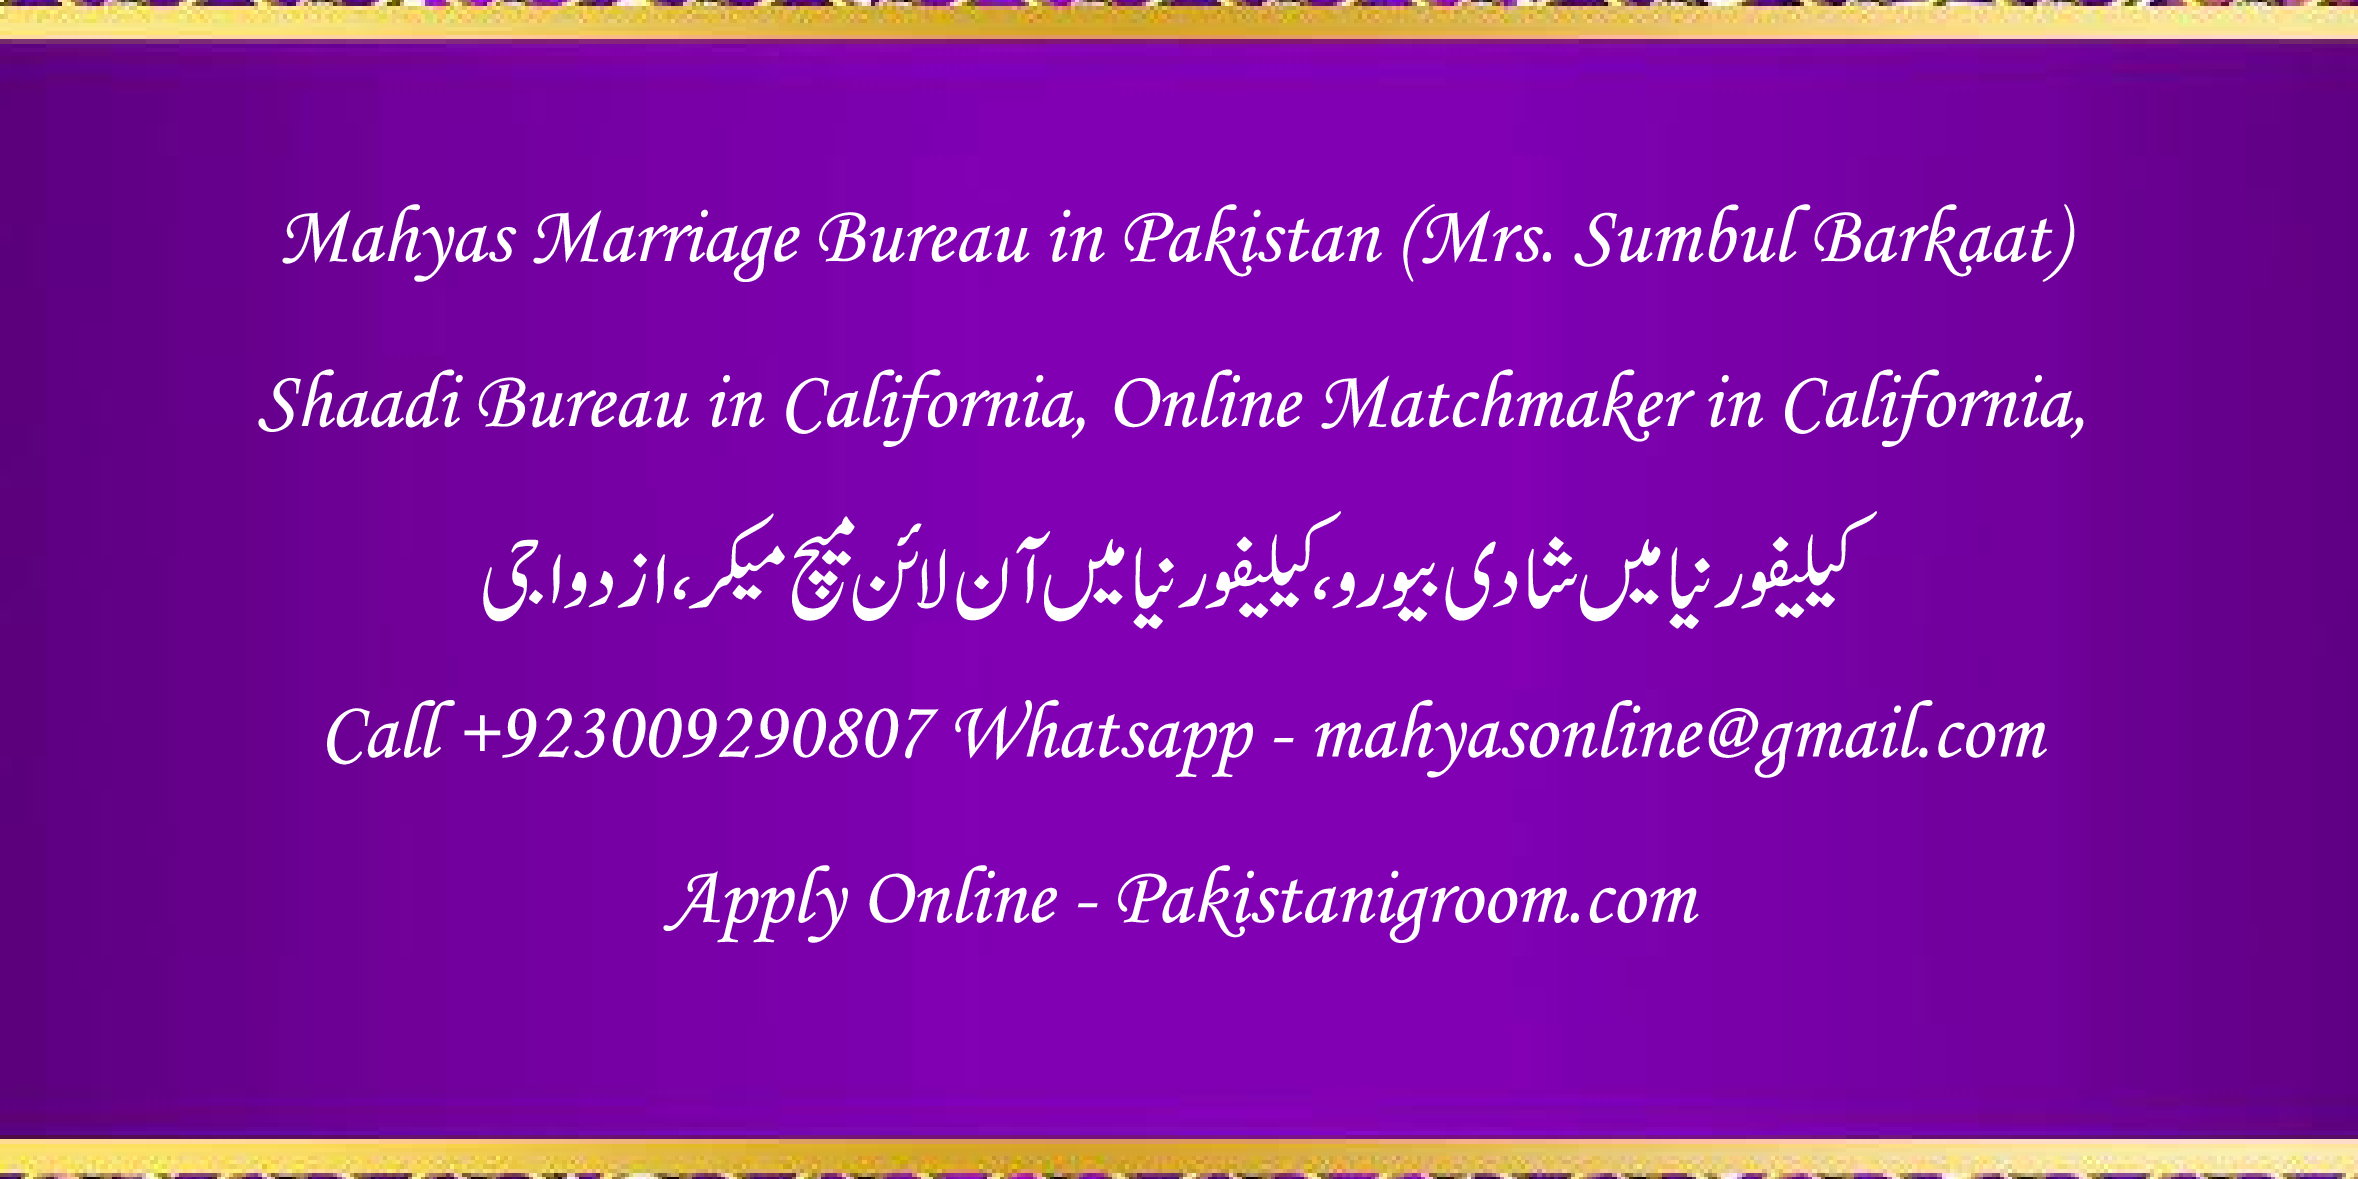 Mahyas-marriage-bureau-Karachi-Pakistan-for-Shia-Sunni-Remarriage-Divorce-Widow-Second-marriage-Punjabi-Pashto-Urdu-10.png